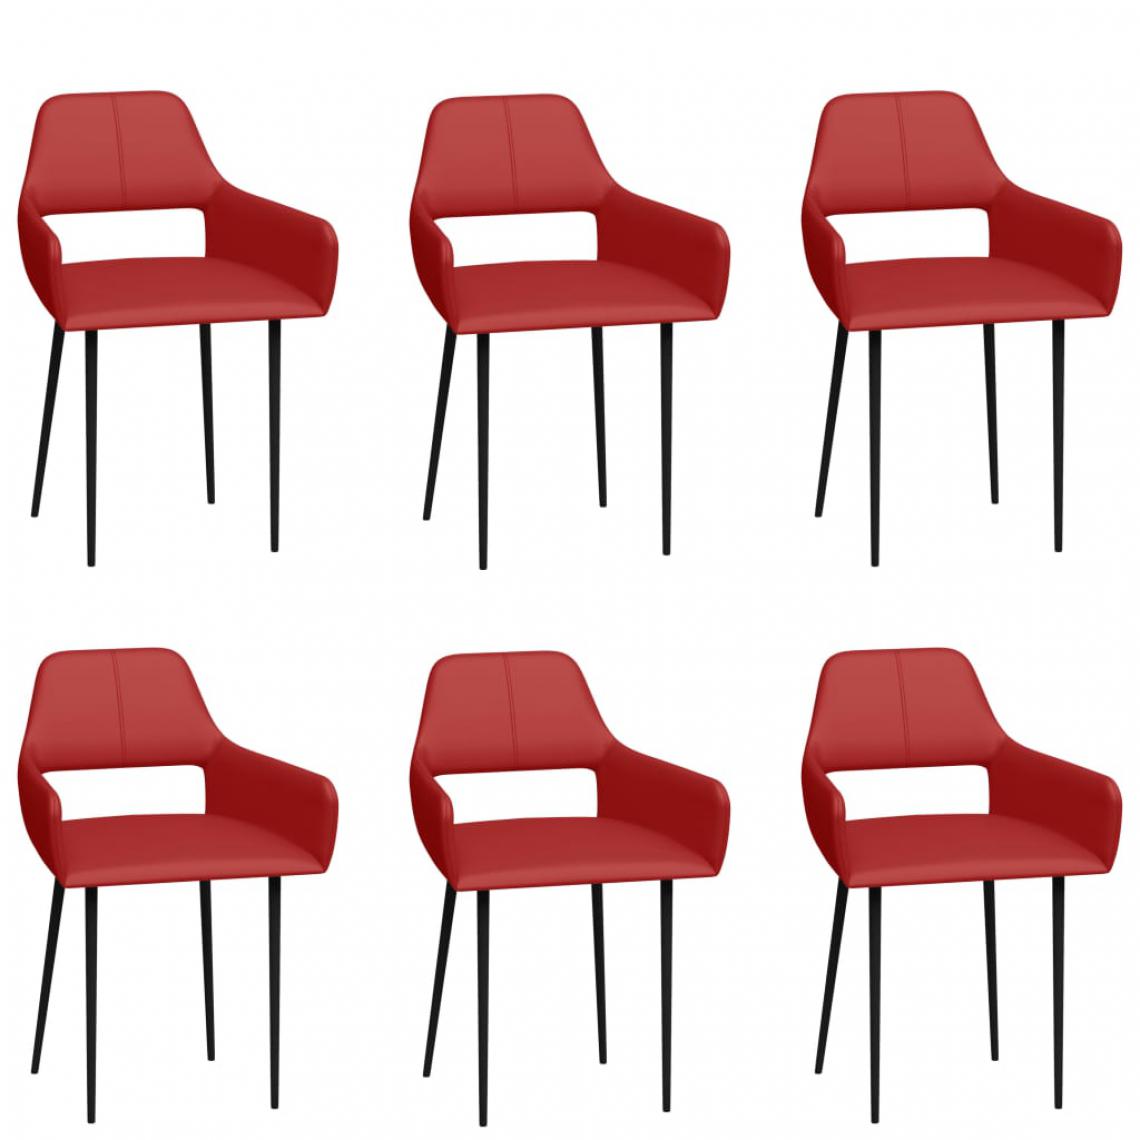 Icaverne - Superbe Fauteuils et chaises reference Londres Chaises de salle à manger 6 pcs Rouge Similicuir - Chaises